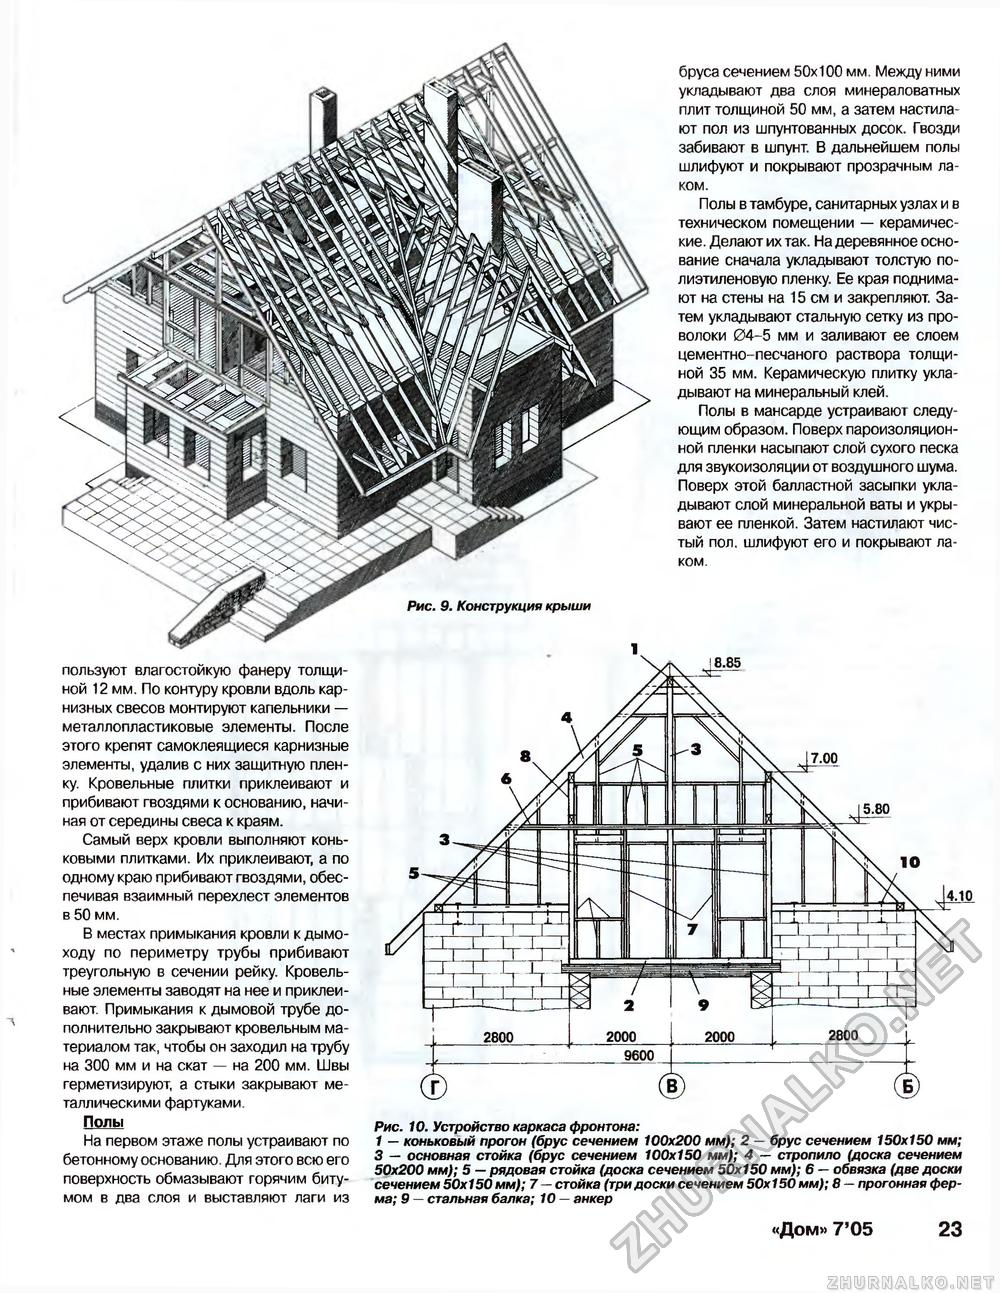 Дом 2005-07, страница 23